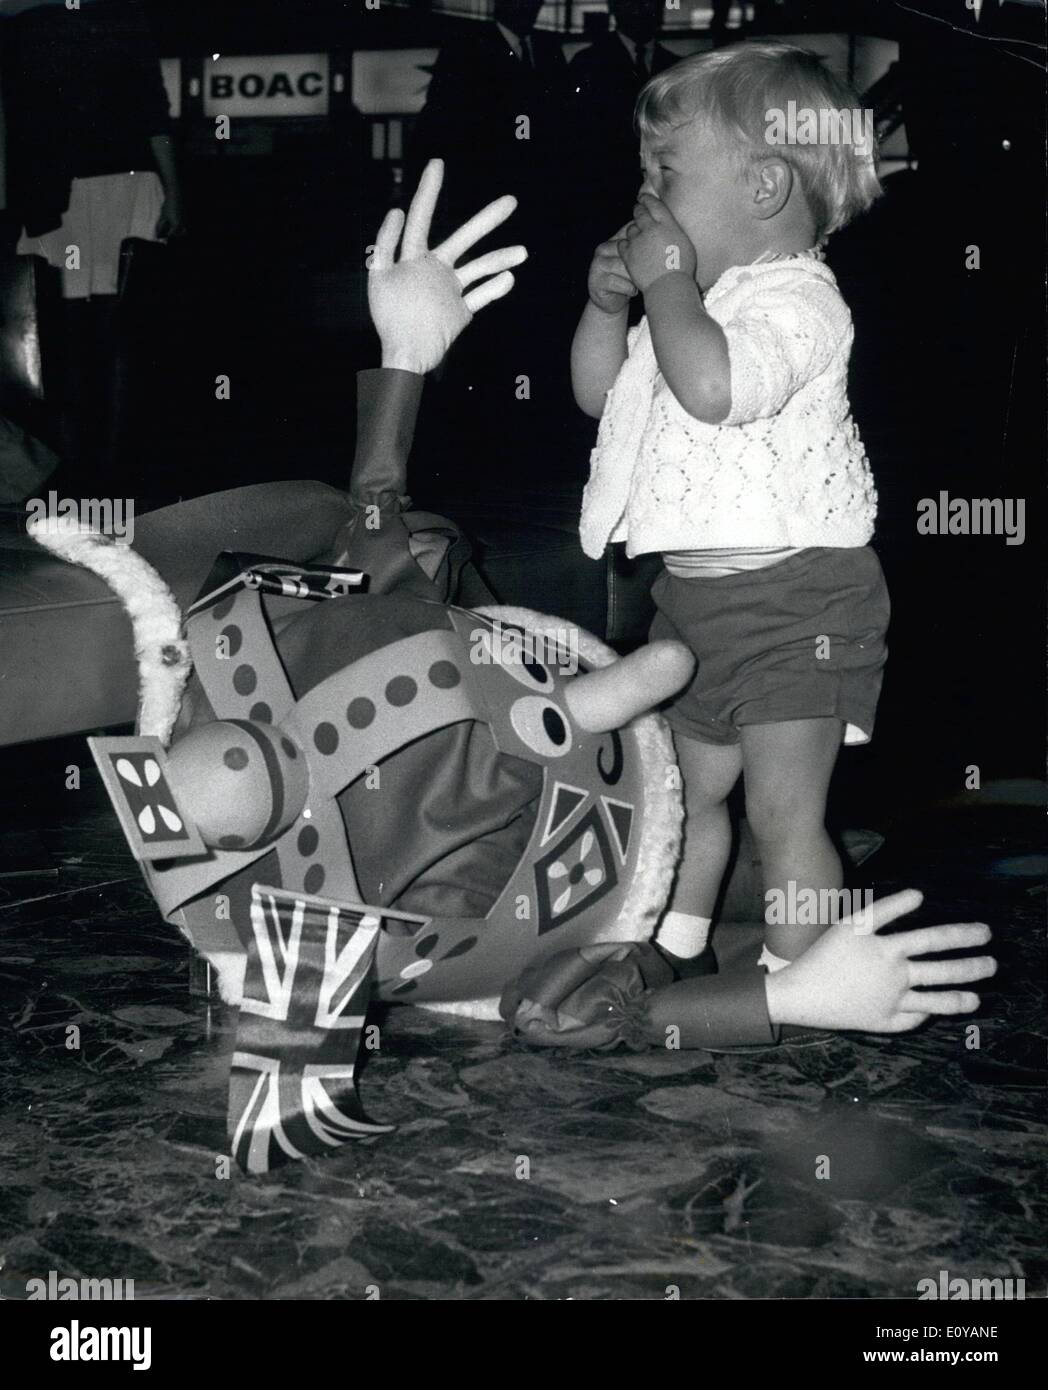 7. Juli 1969 - A König bittet, Go To The Moon: Ethelbert, will die Marionette König von Thames Television '' Natty Town'' Kinderserie den amerikanischen Astronaut Neil Armstrong, der erste Mensch auf dem Mond auf seiner historischen Raum Reise auf den Mond Planeten, die am 16. Juli Blasten sein wird aus begleiten. König Ethelbert Bestimmung ist eine solche, die mit einer persönlichen Note, die von ihm selbst unterzeichnete bewaffnet, verließ er Heathrow für die Vereinigten Staaten heute. Foto zeigt 16-Monate alte Ian Smith, von Bedford, der war auf dem Flughafen mit seinen Eltern - traf Ethelbert, die Marionette König, der war auf dem Weg nach New York Stockfoto